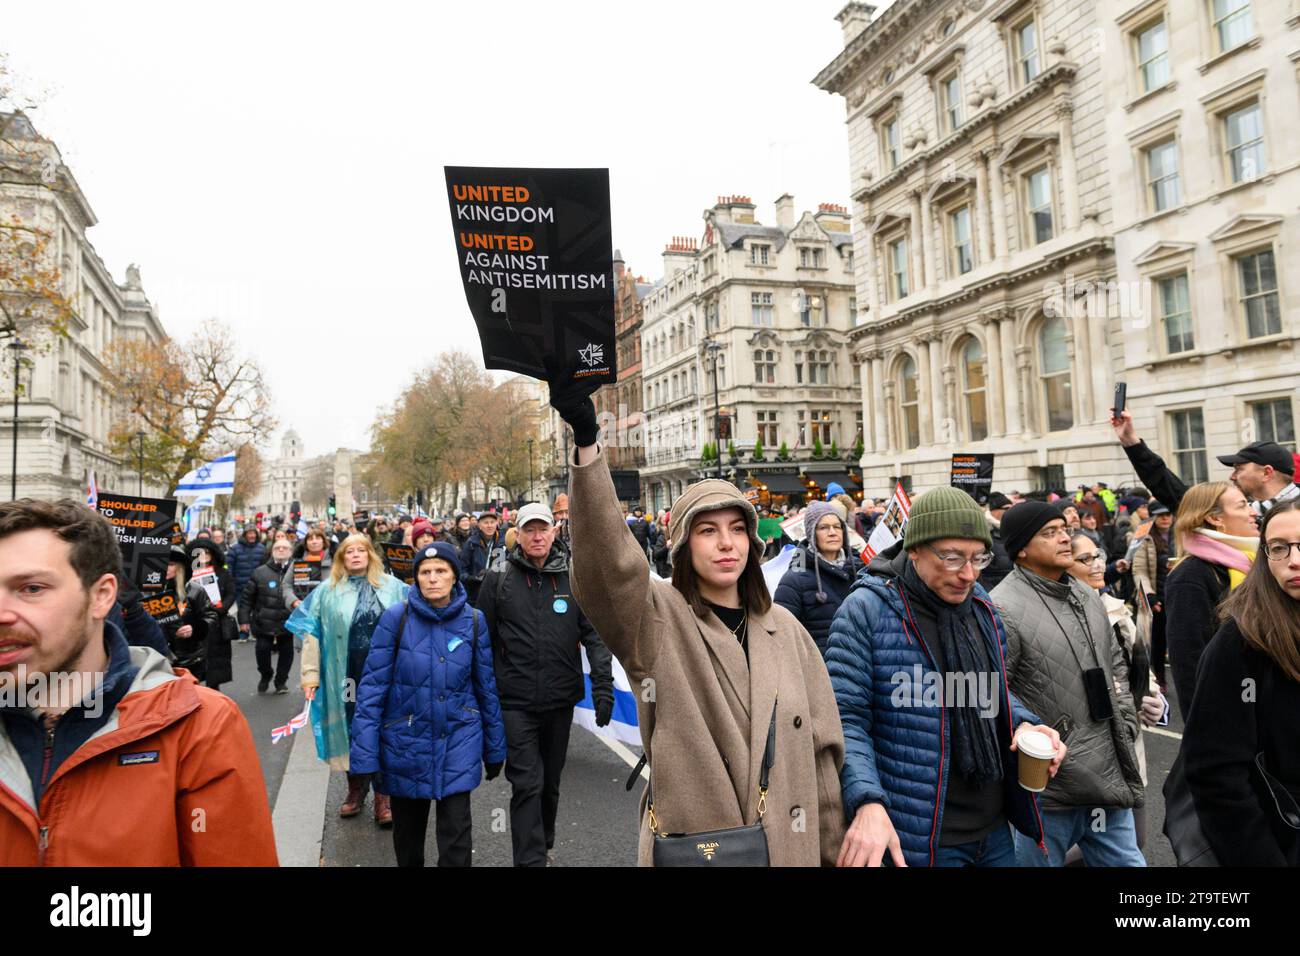 Une marche pour protester contre l'augmentation des incidents d'antisémitisme pendant le récent conflit israélo-palestinien se déplace vers Whitehall. Ils ont appelé à la rel Banque D'Images